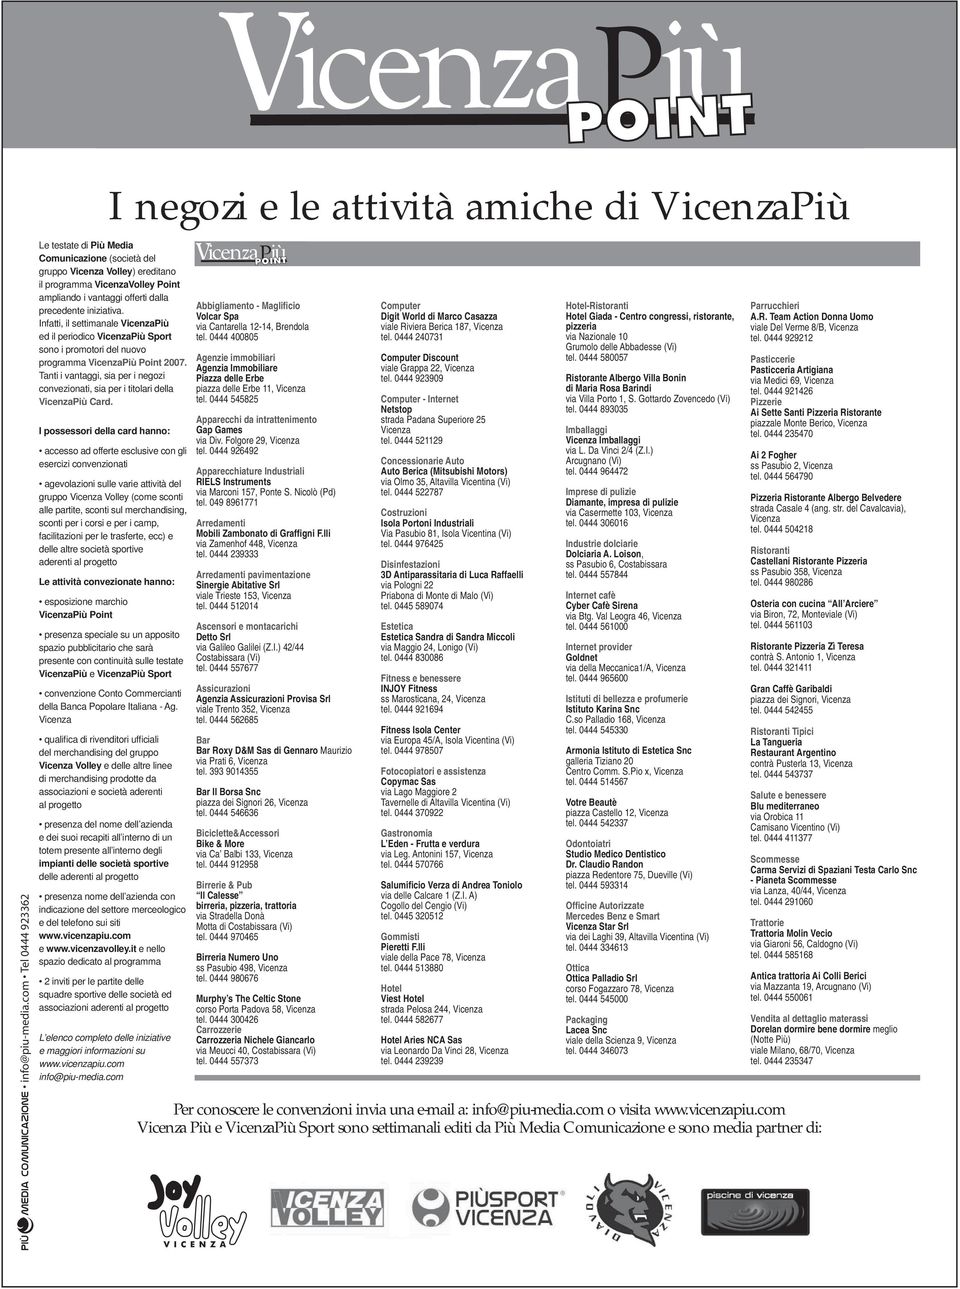 Infatti, il settimanale VicenzaPiù ed il periodico VicenzaPiù Sport sono i promotori del nuovo programma VicenzaPiù Point 2007.